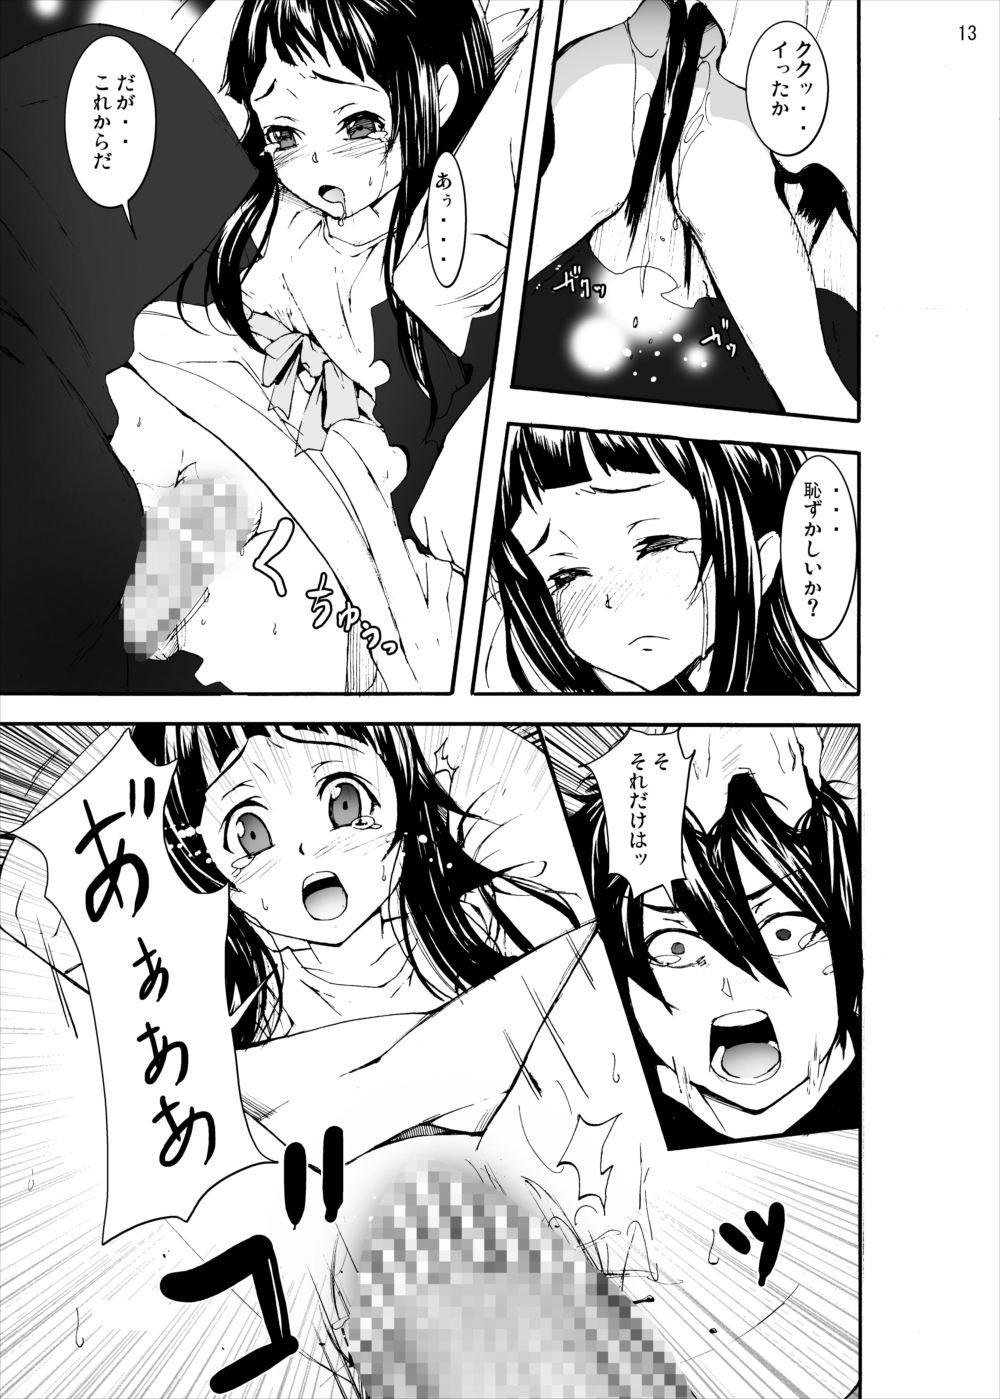  Asuna to Yui no Jigoku Rape... Ryoujoku Oyakodon Story - Sword art online Free Porn Hardcore - Page 12